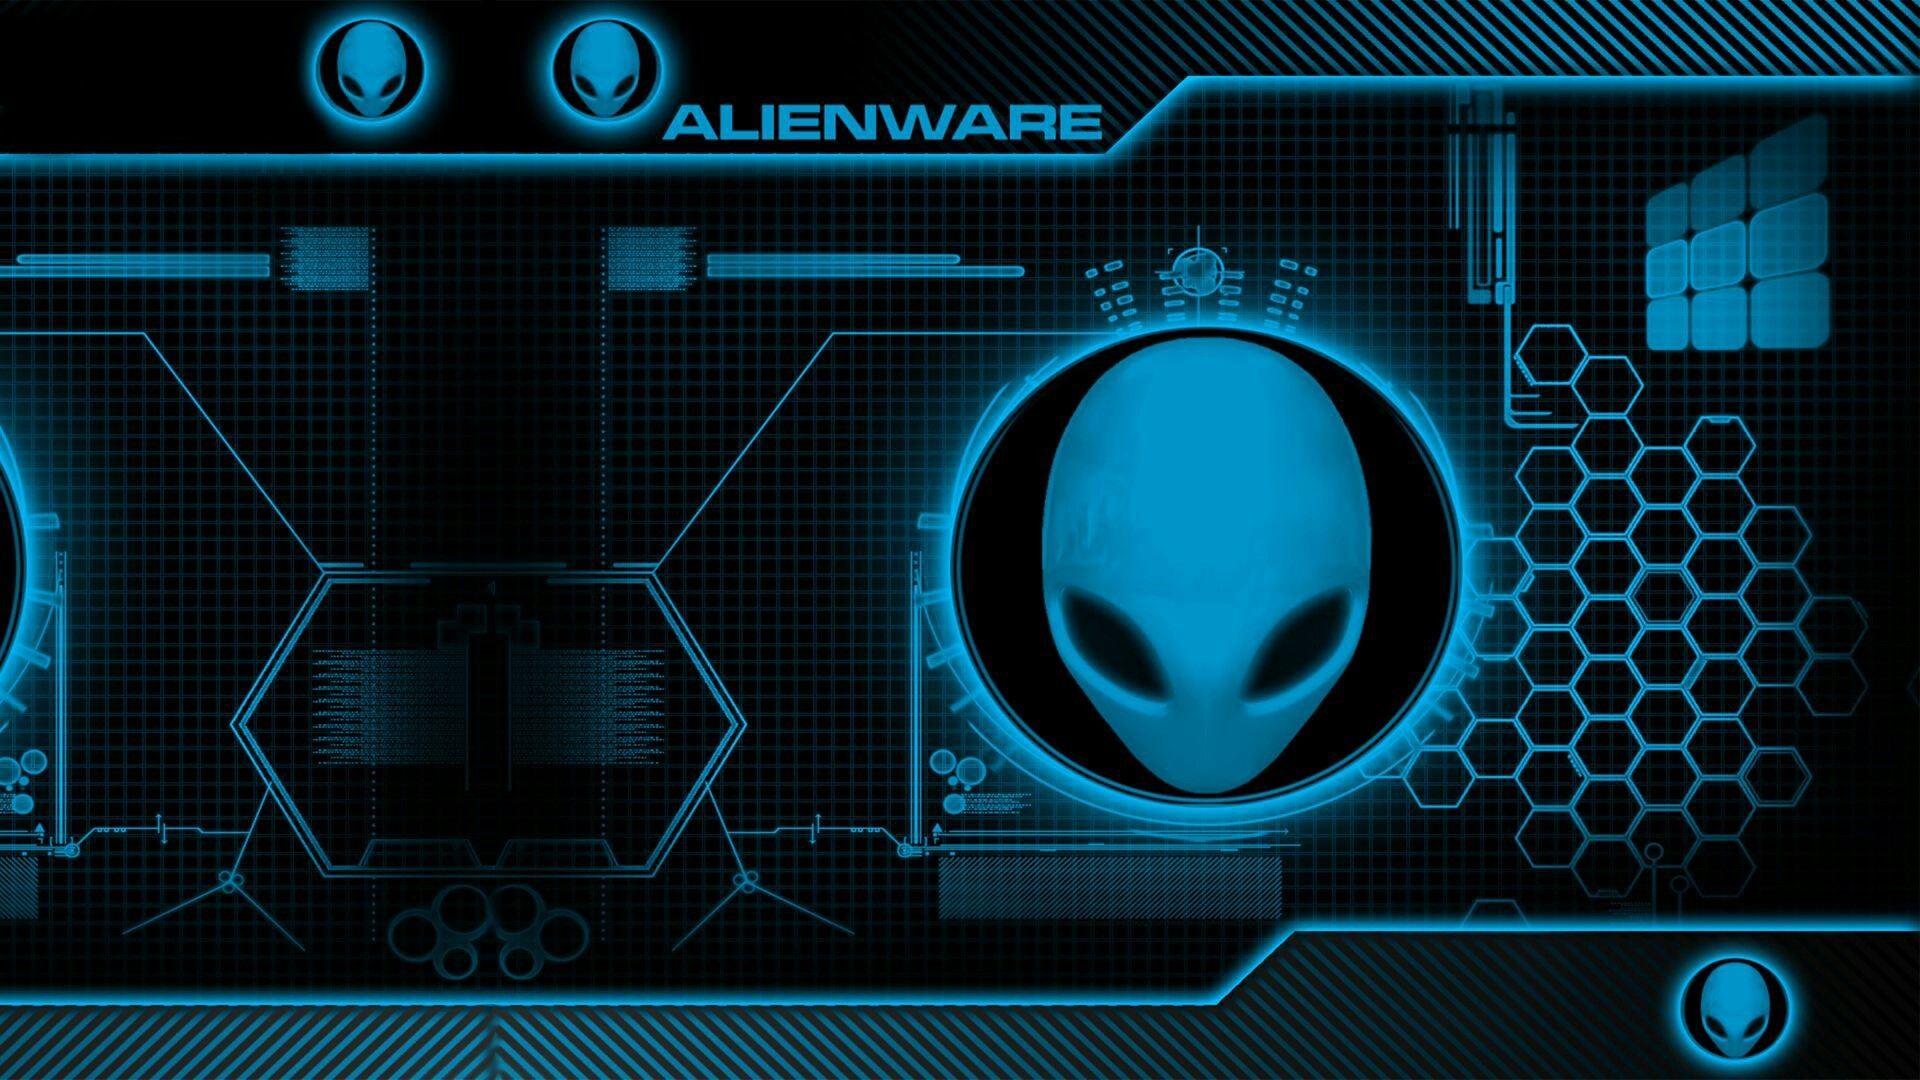 1920x1080 Blue Alienware Wallpapers - Wallpaper Cave | Alienware | Pinterest |  Alienware